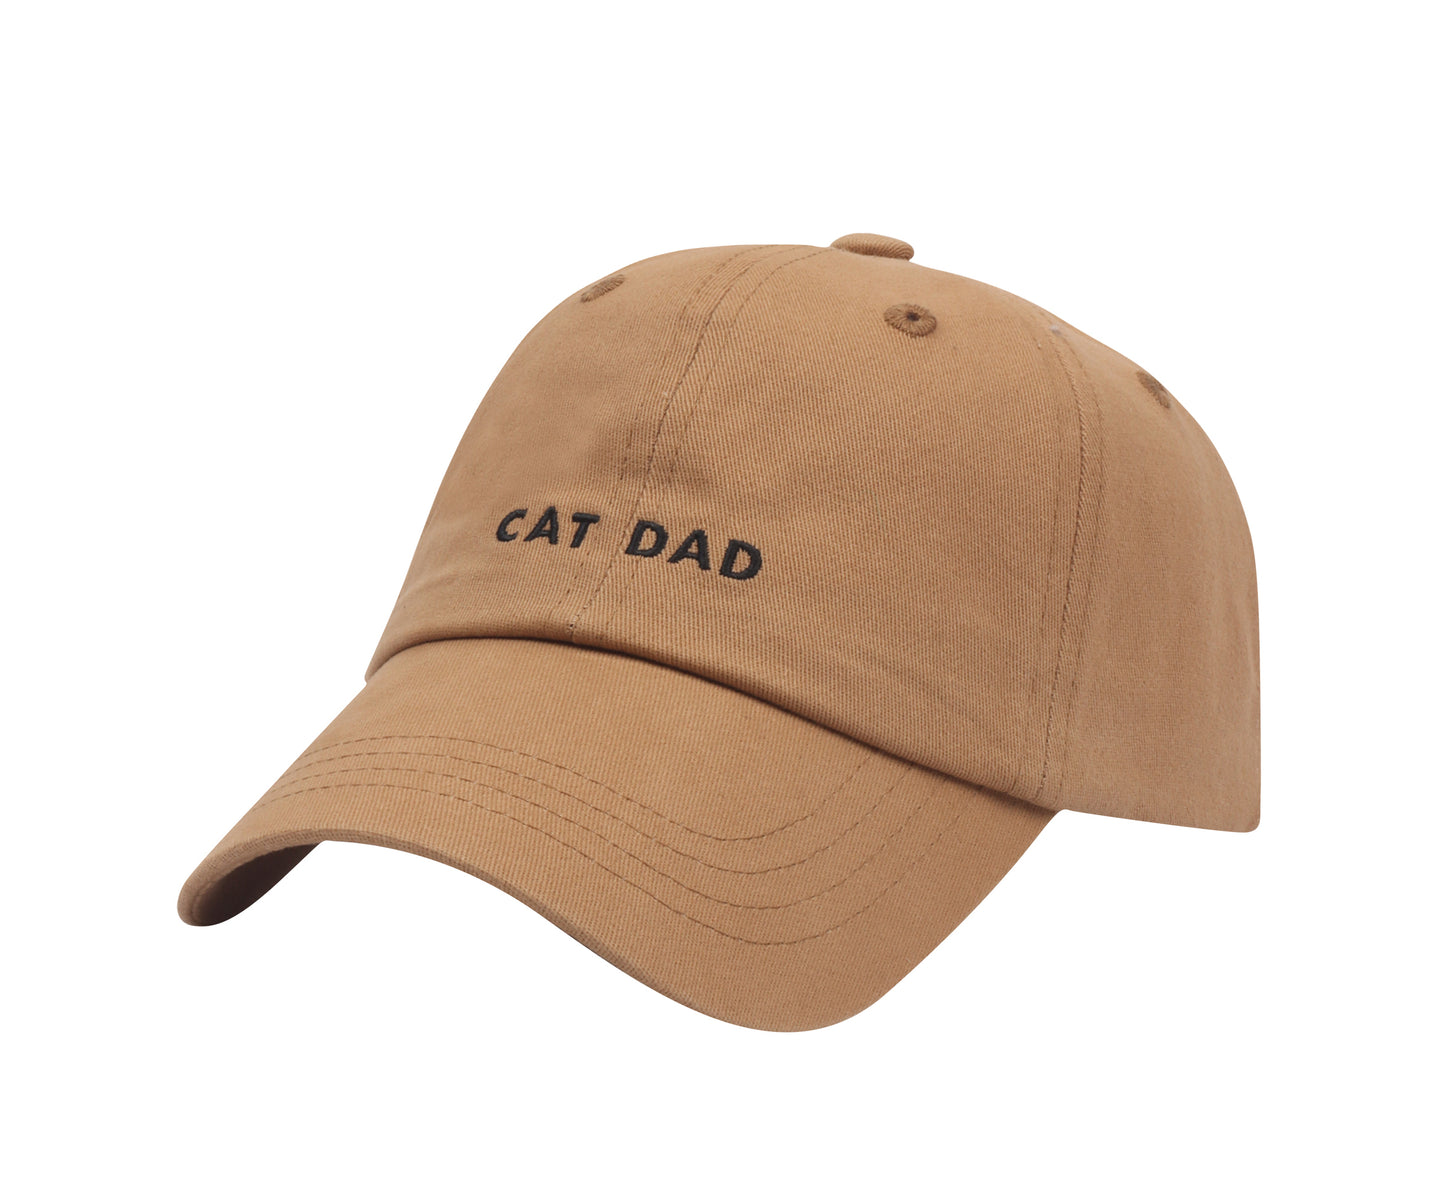 Cat Dad Baseball Cap